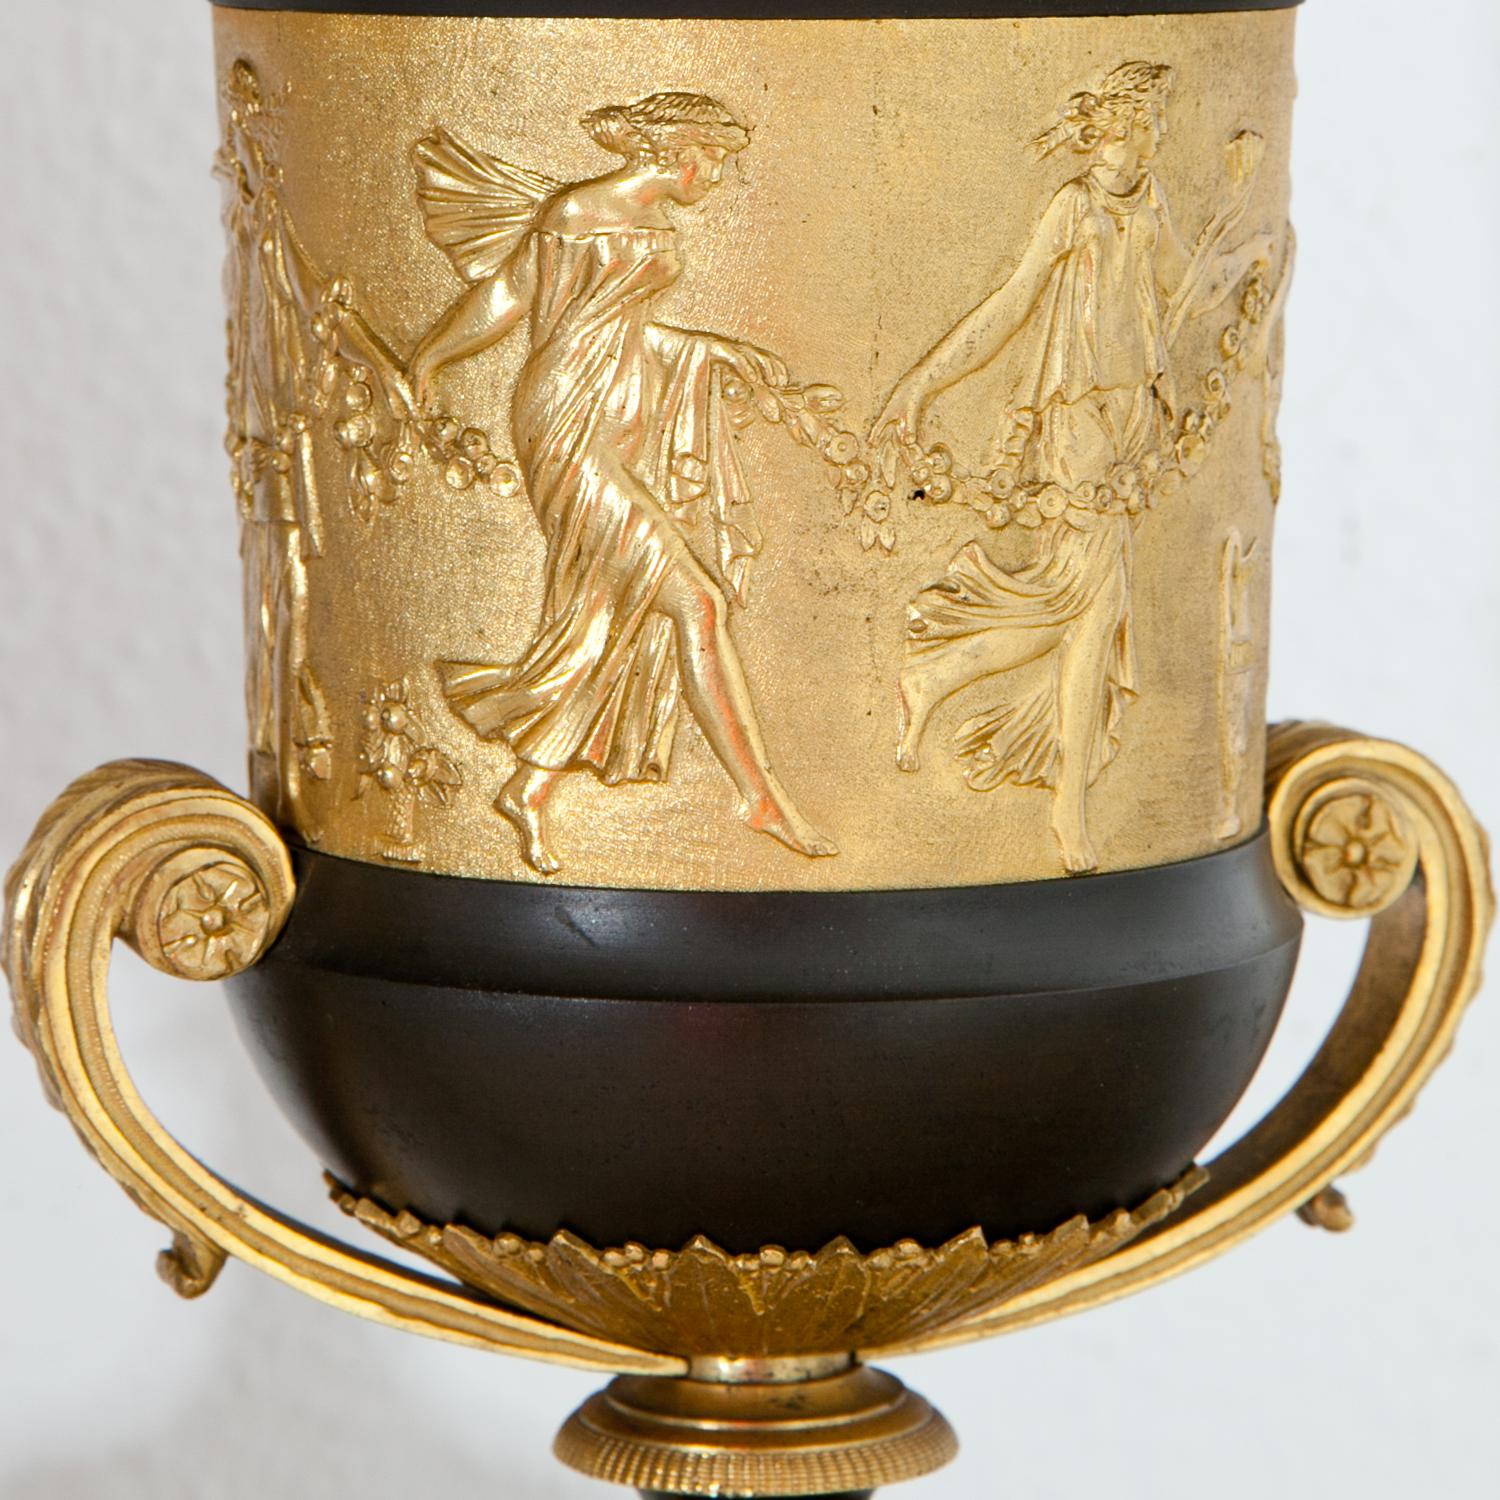 Paar teilweise vergoldete Brûle-Parfum-Urnen, Claude Gallé zugeschrieben, auf grauen Marmorsockeln mit Hermes-Maskaronen. Die Urnen sind mit einer vergoldeten Reliefwand verziert, auf der tanzende Mänaden dargestellt sind. Der Deckel und der Rand